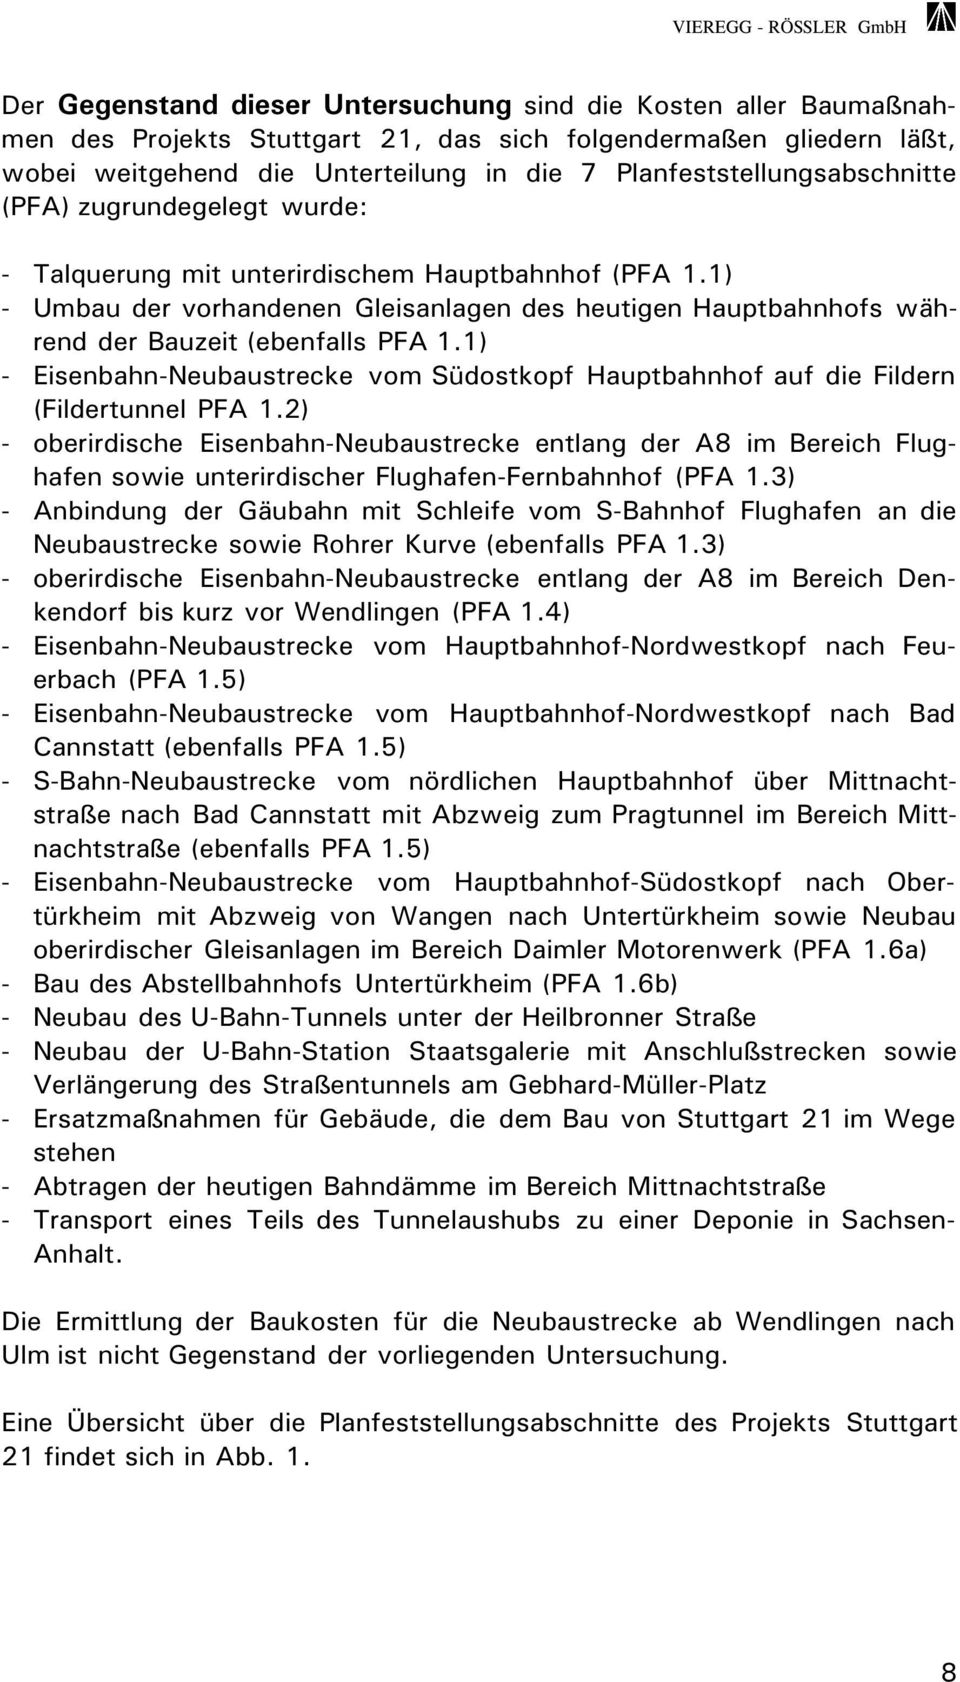 1) - Umbau der vorhandenen Gleisanlagen des heutigen Hauptbahnhofs während der Bauzeit (ebenfalls PFA 1.1) - Eisenbahn-Neubaustrecke vom Südostkopf Hauptbahnhof auf die Fildern (Fildertunnel PFA 1.